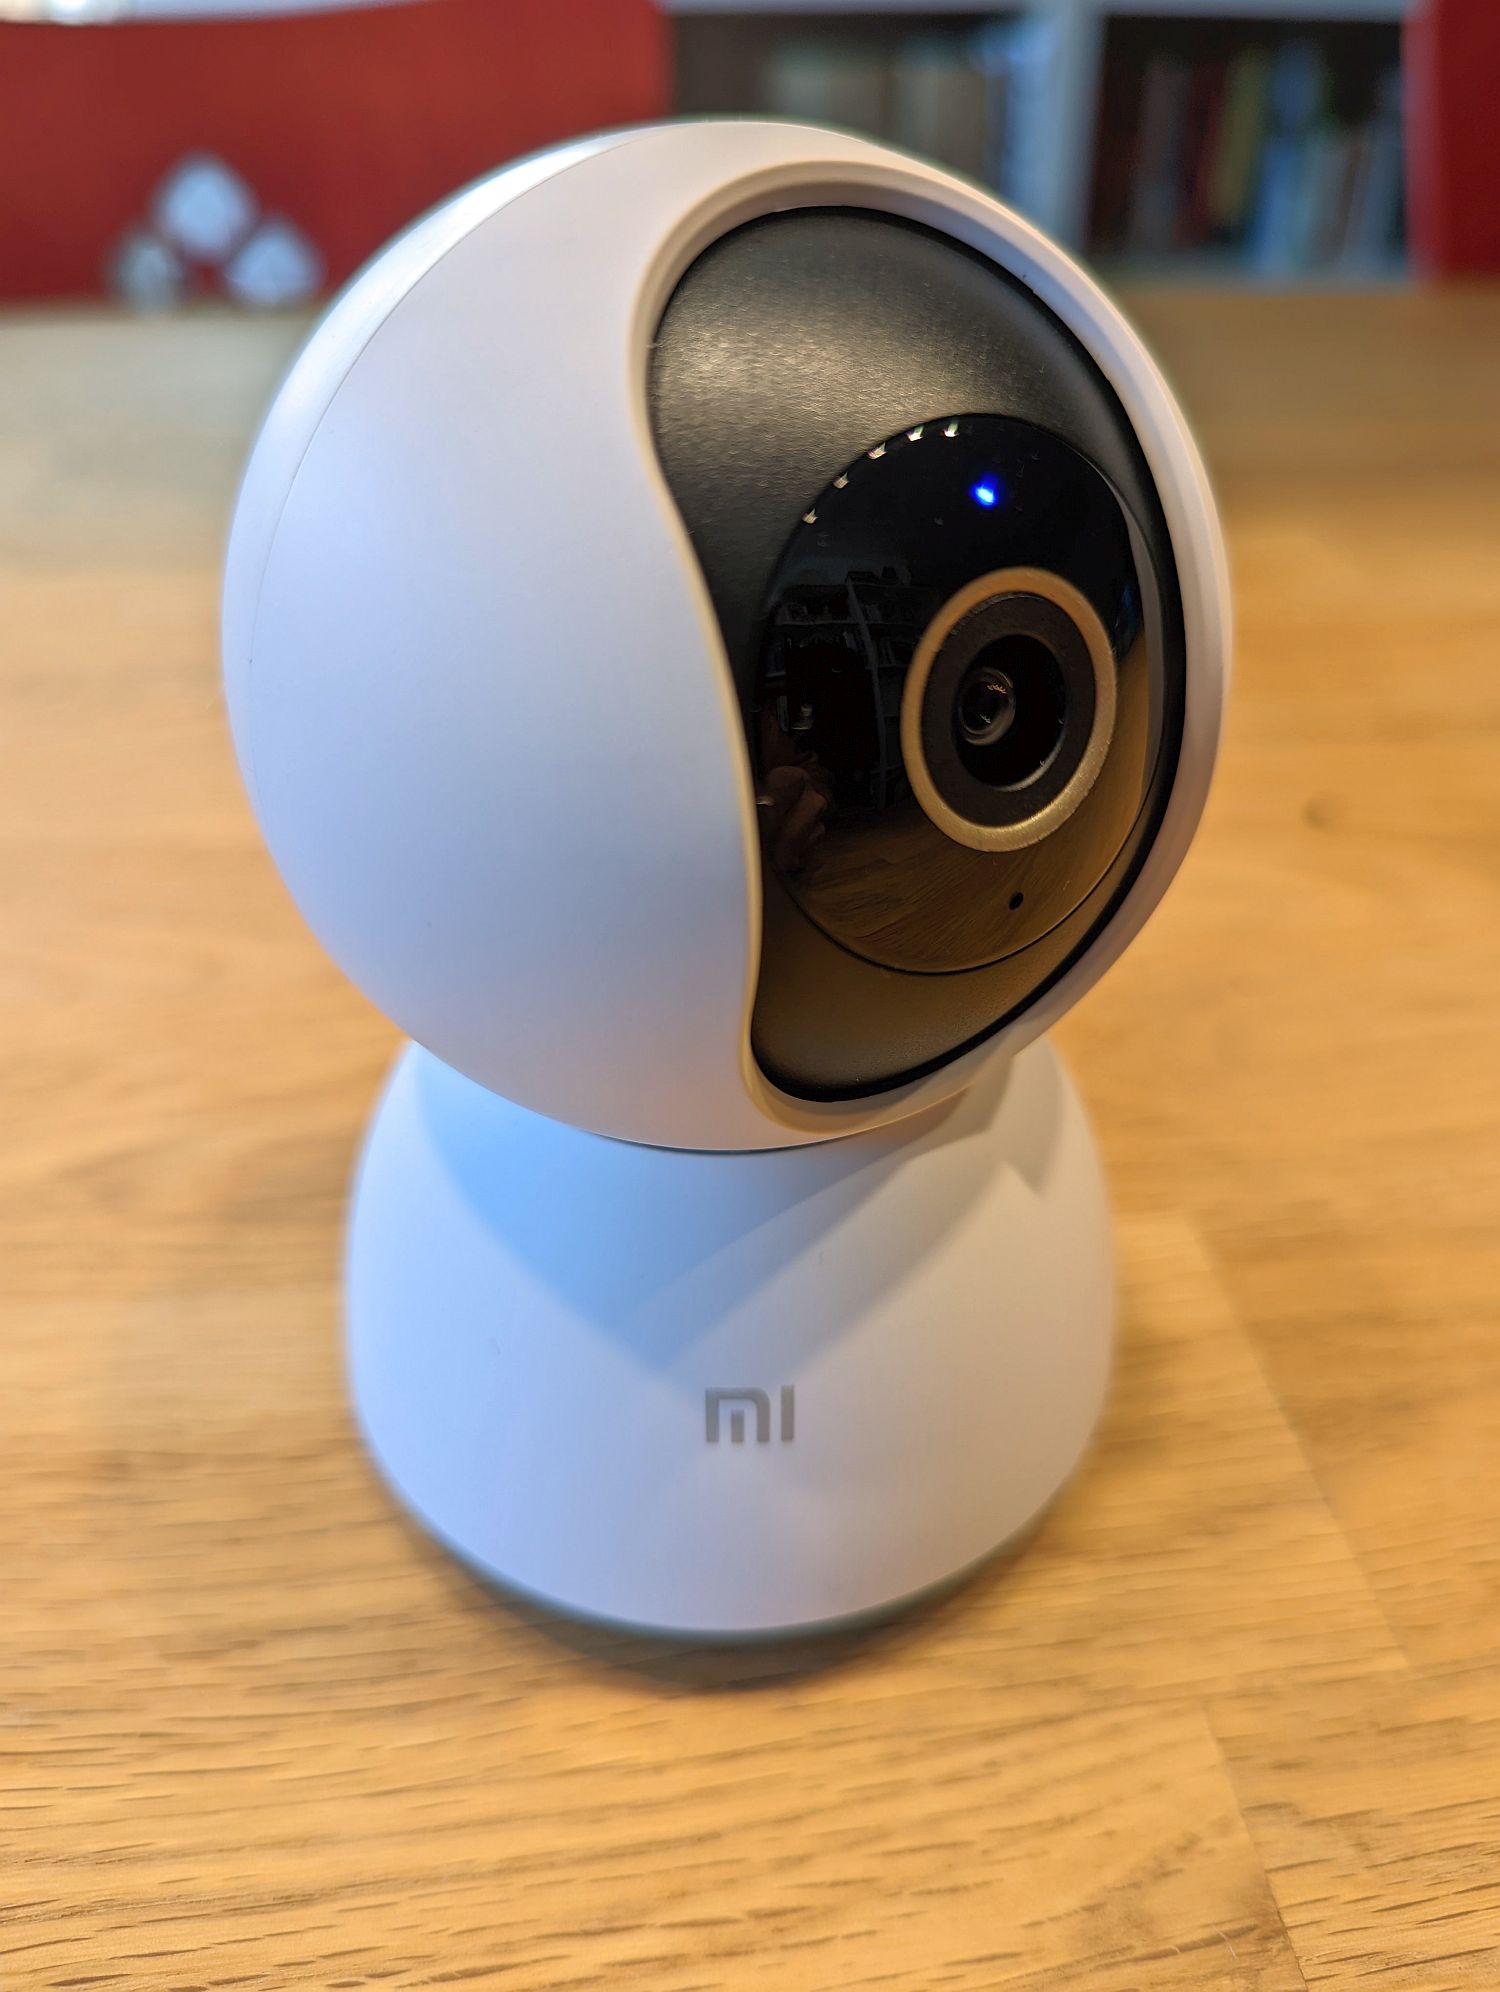 Die Mi Home Security Camera - wie ein kleiner Roboter (Foto: Digisaurier)